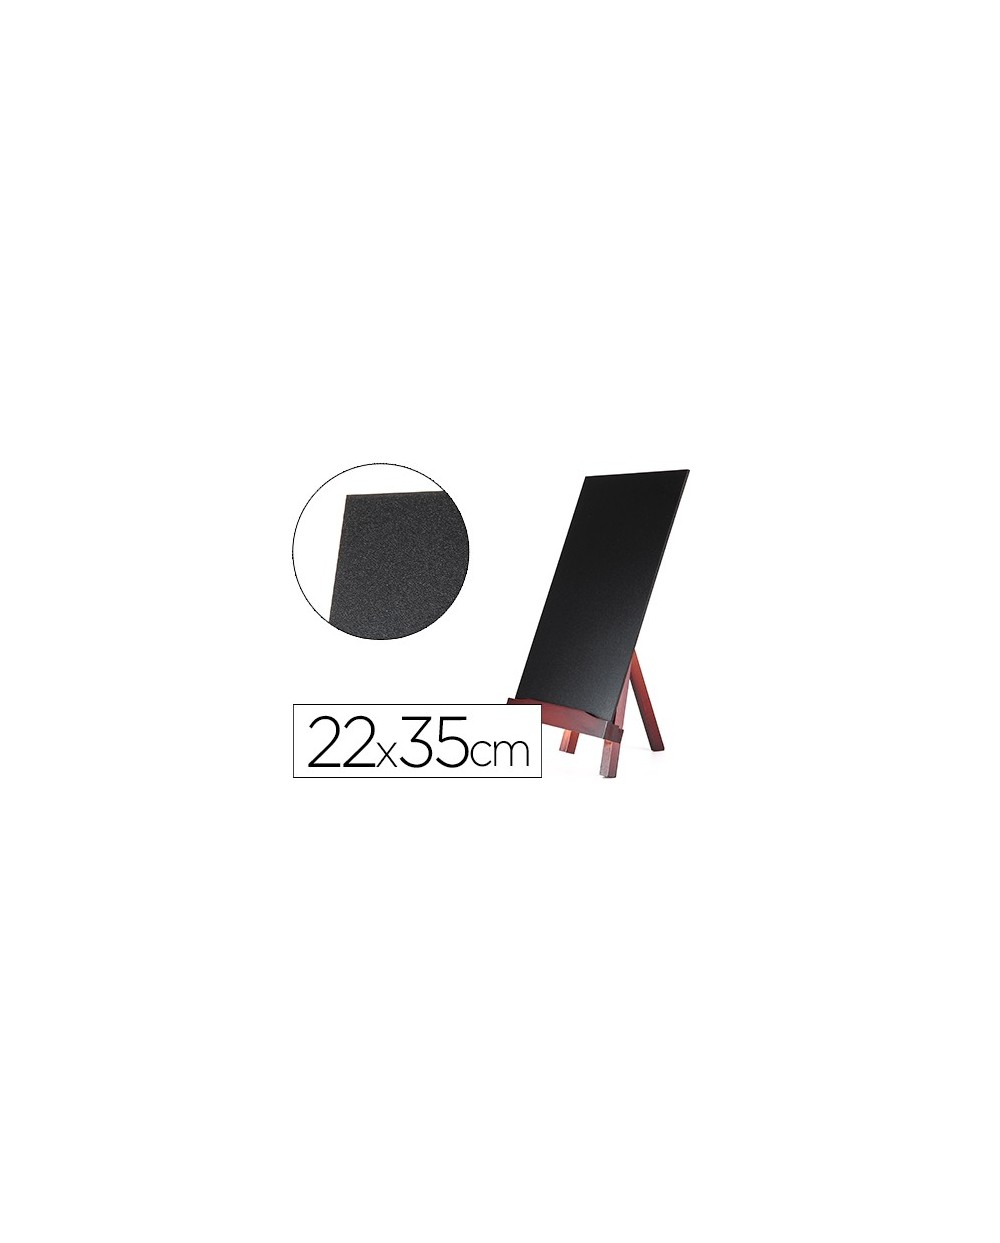 Pizarra negra liderpapel caballete de madera con superficie para rotuladores tipo tiza 22x35cm